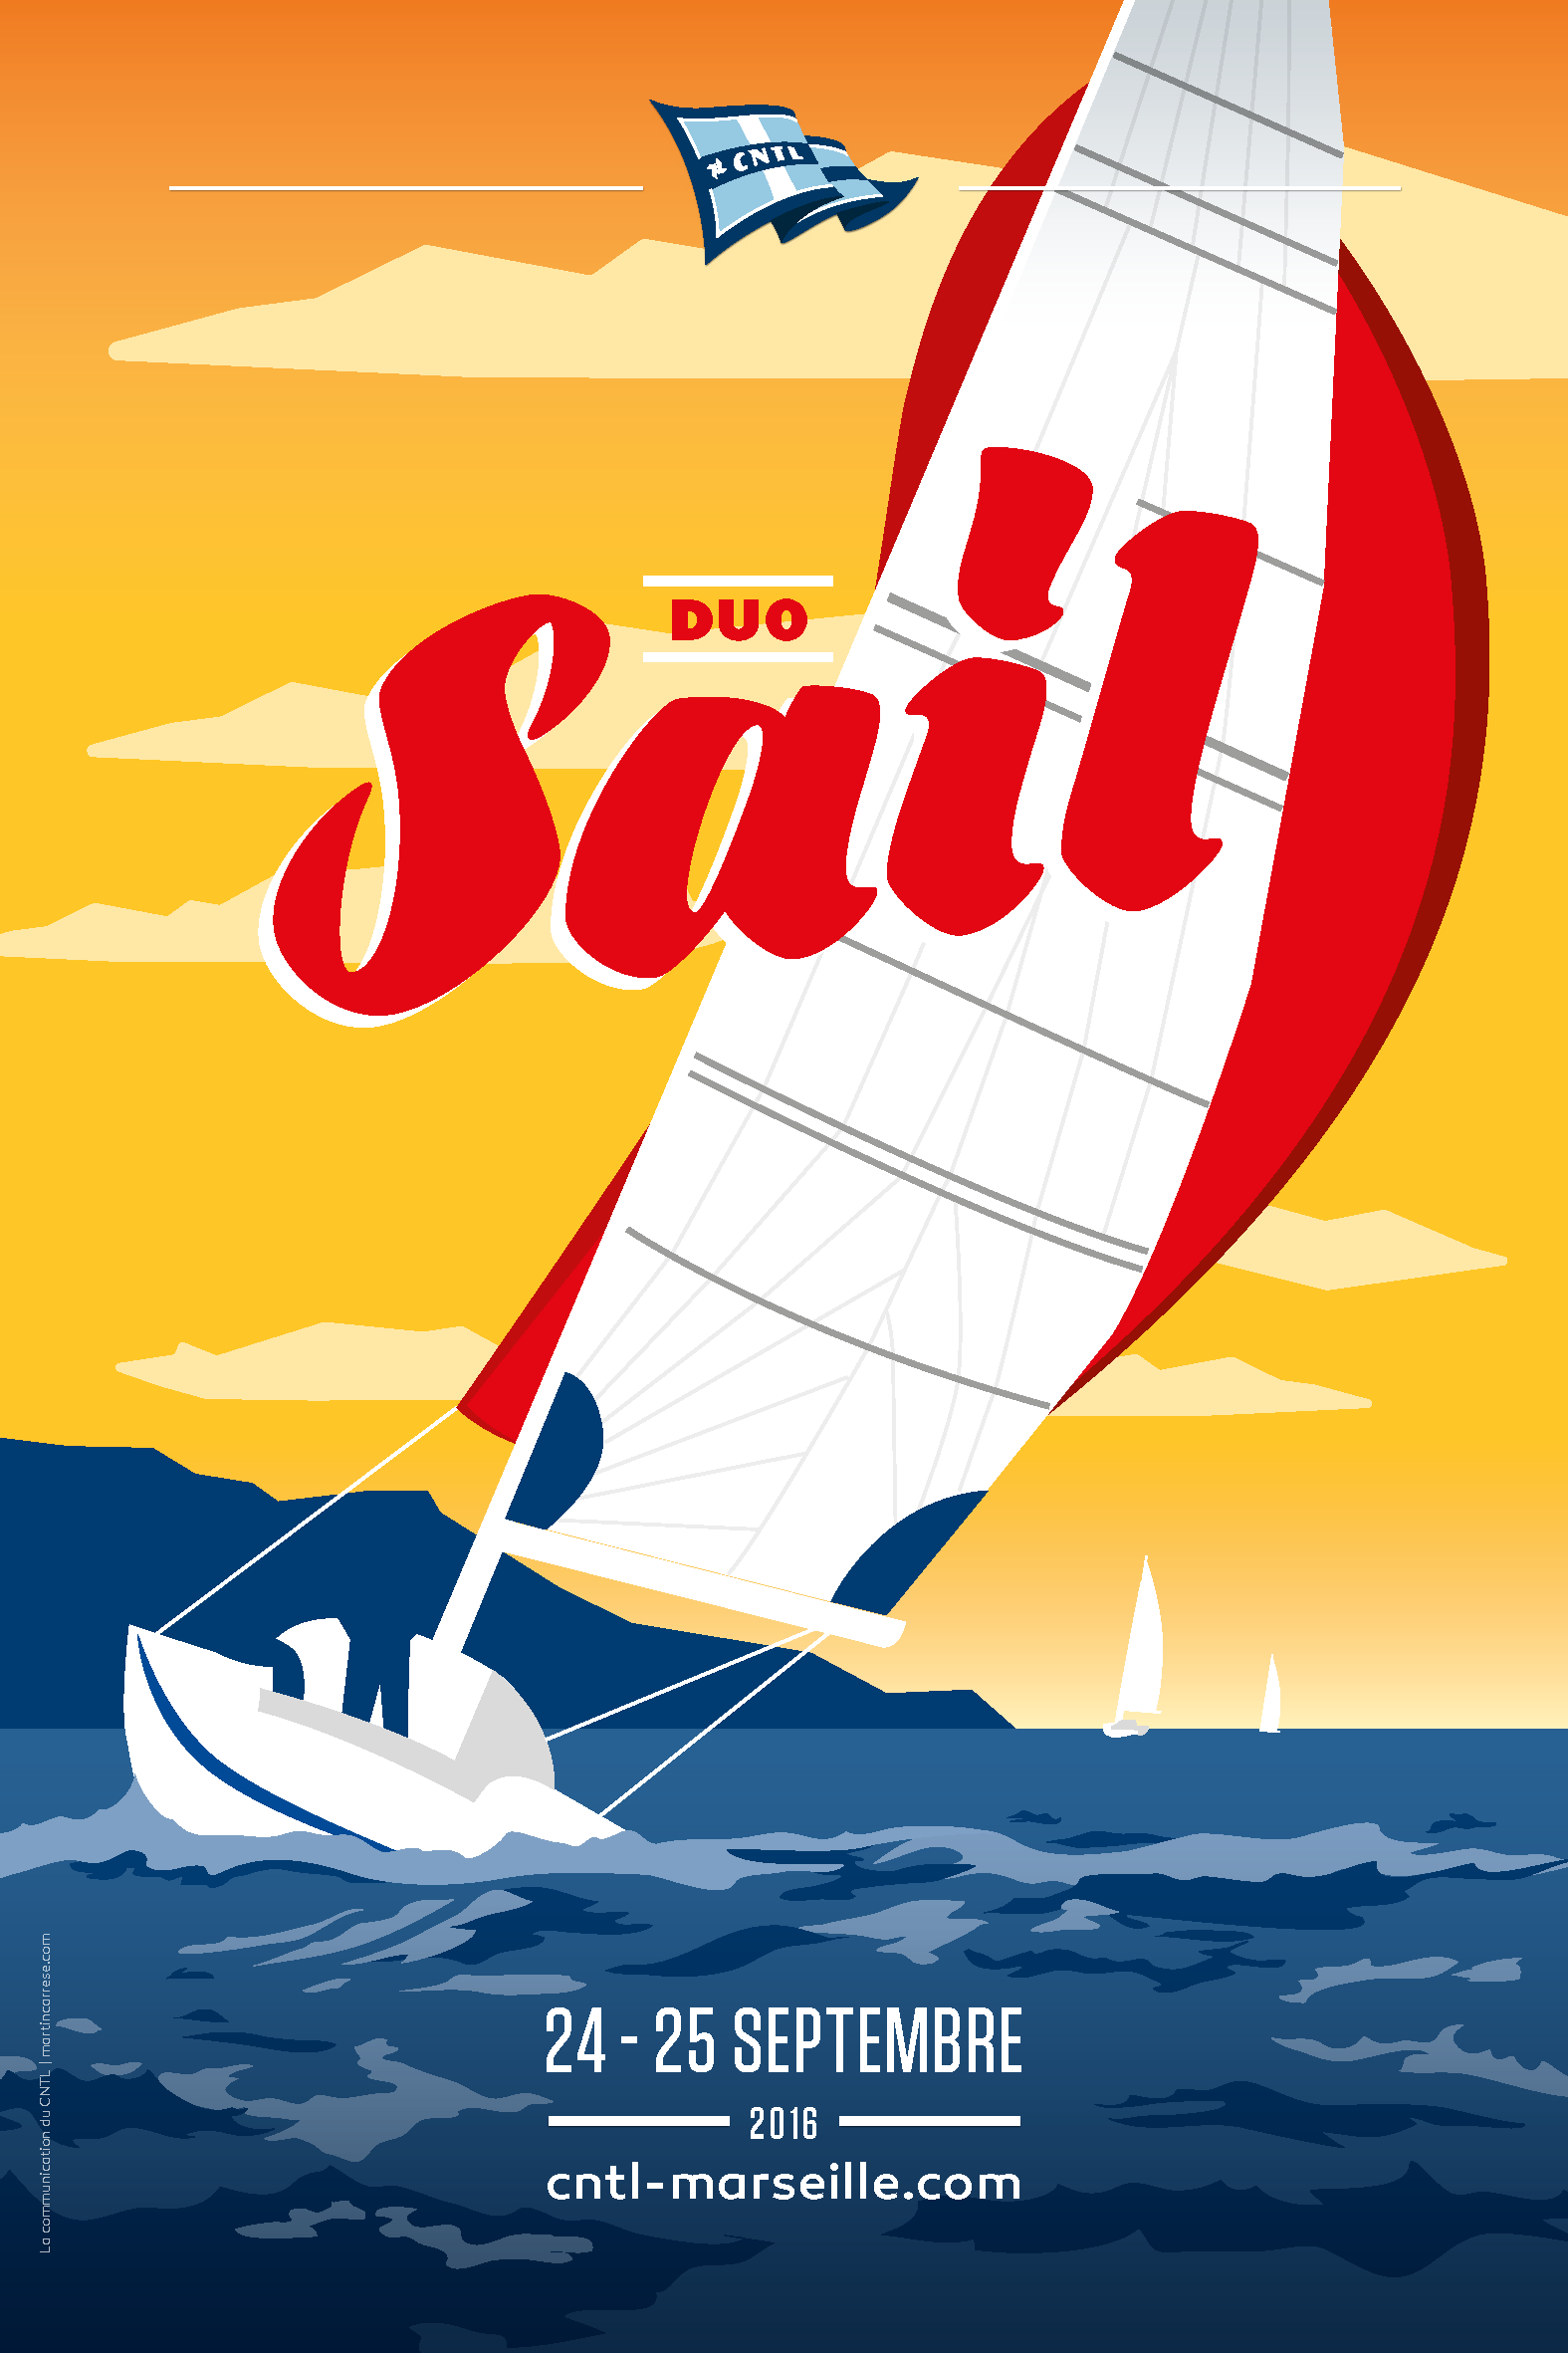 Duo Sail 2016